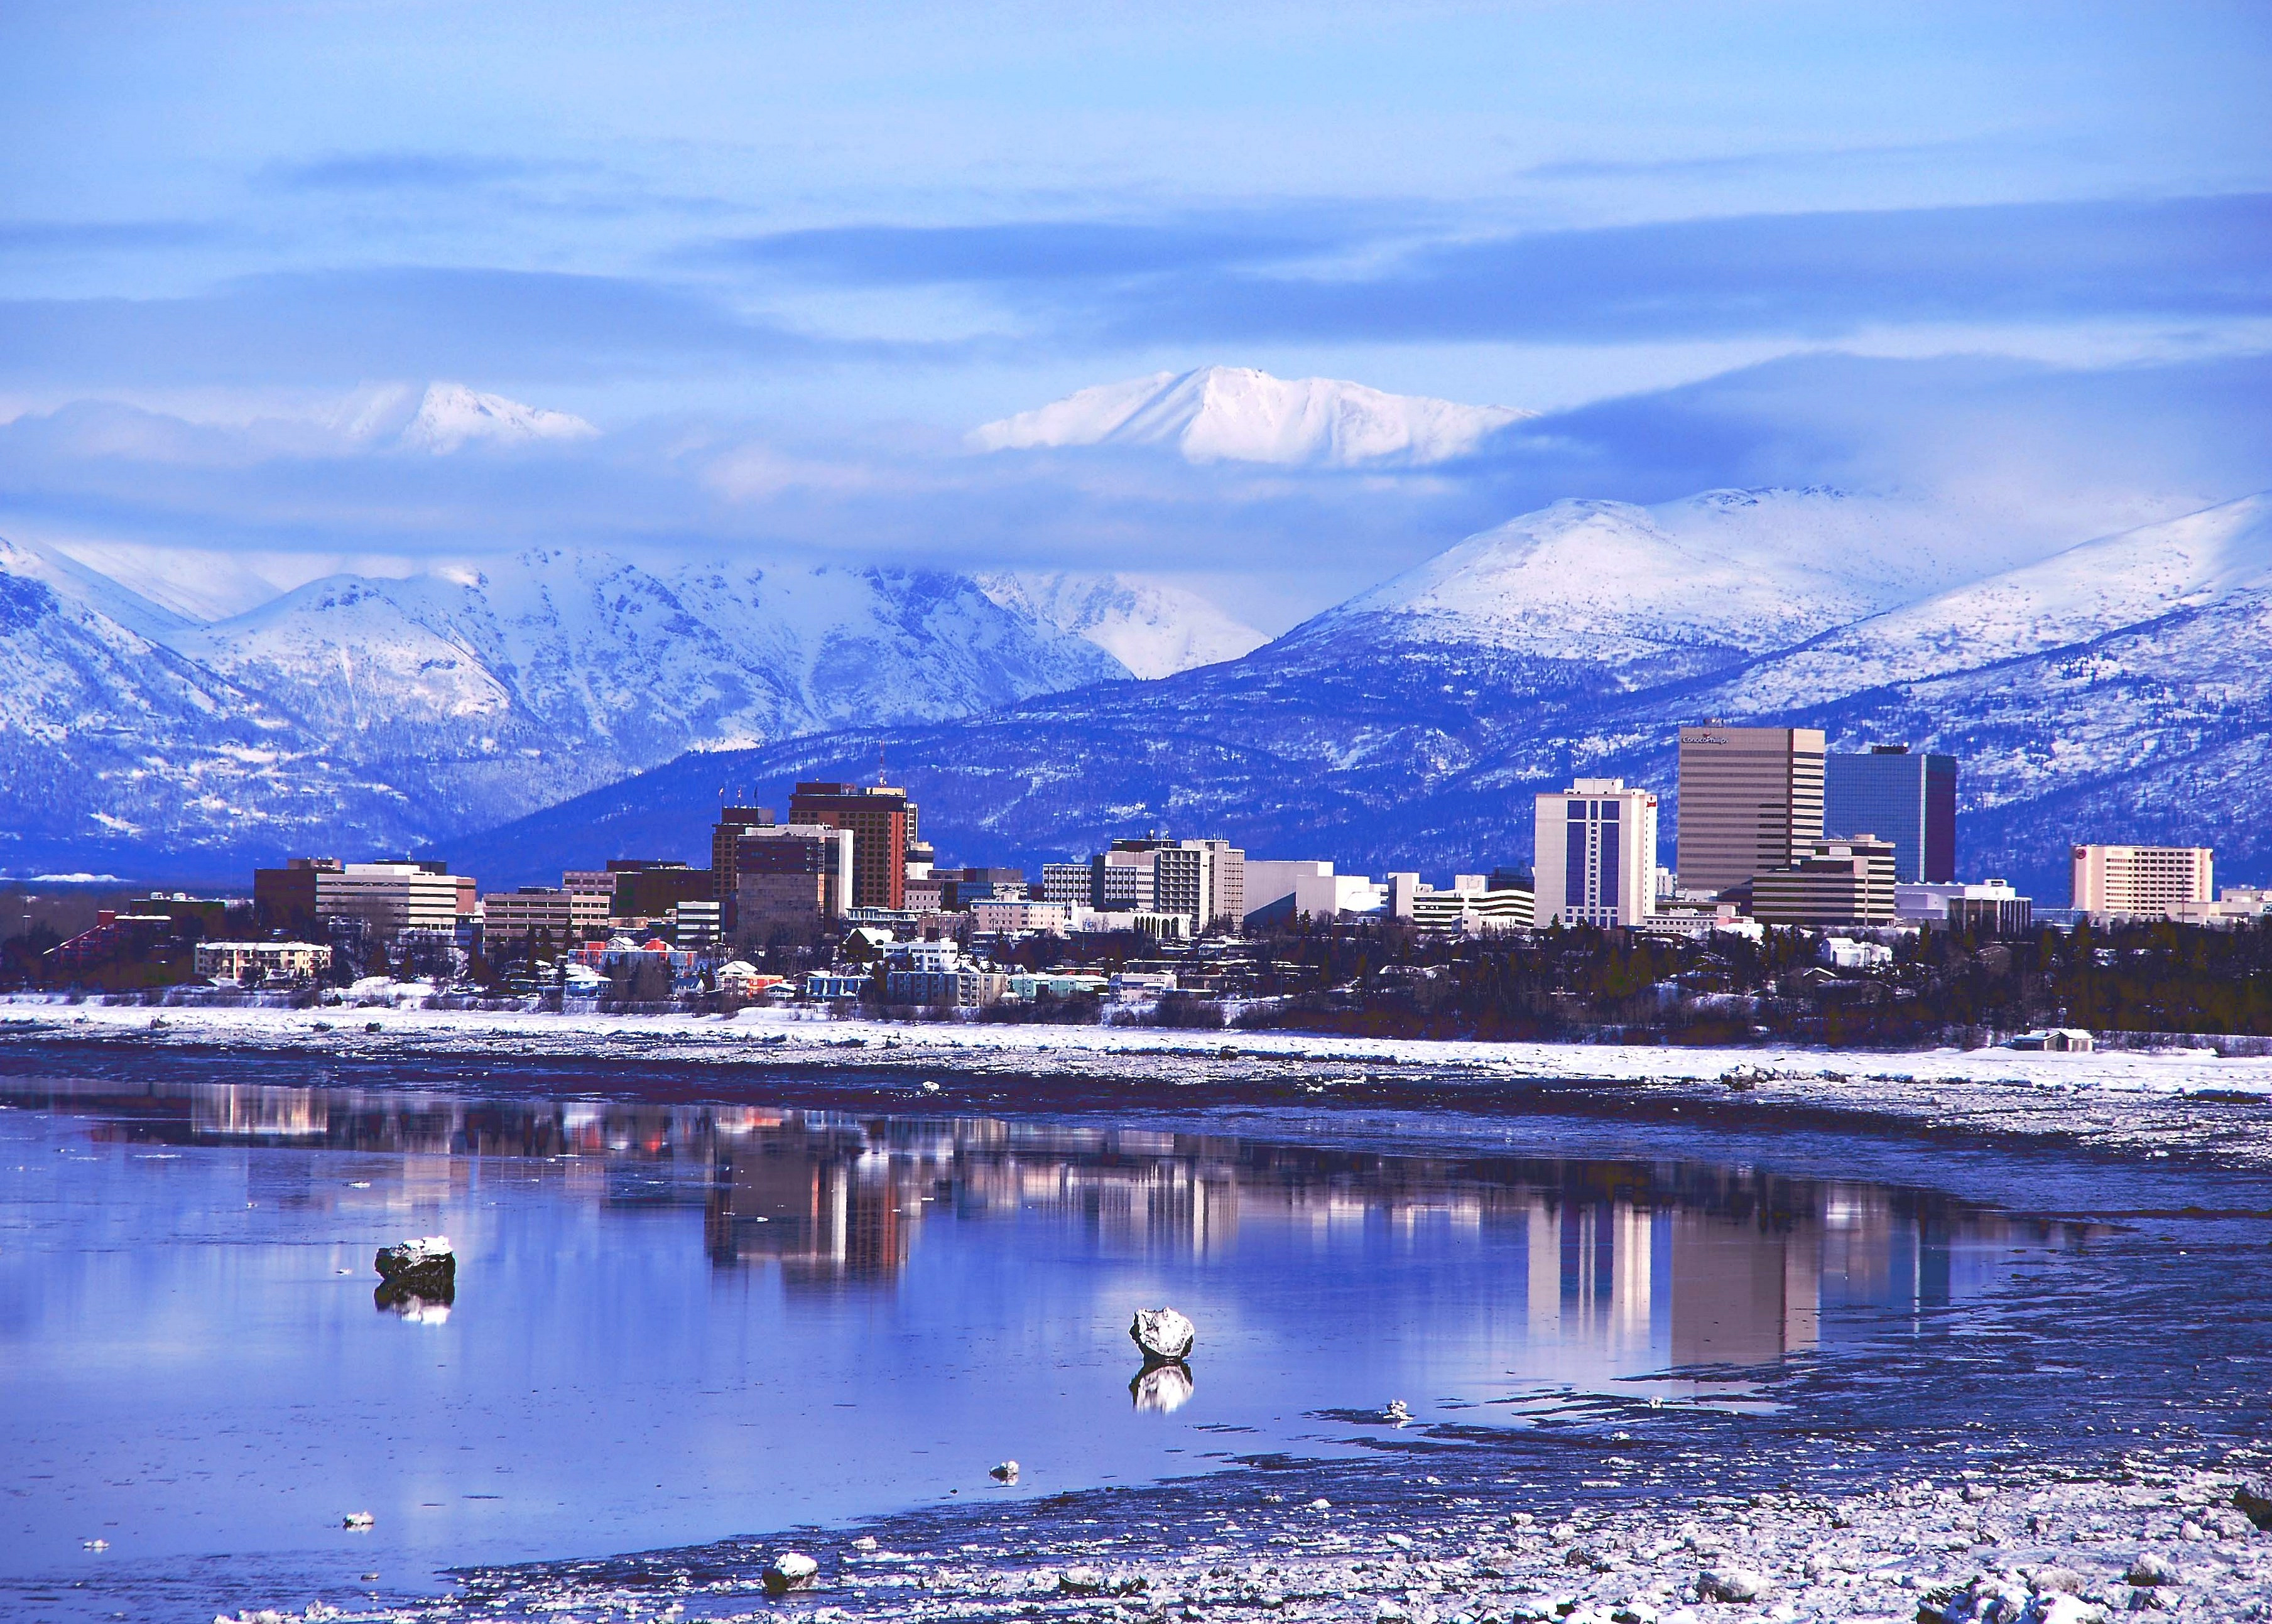 Какое время года в северной америке. Аляска штат США Анкоридж. Столица Аляски Анкоридж. Штат Аляска город Анкоридж. Анкоридж Аляска зимой.